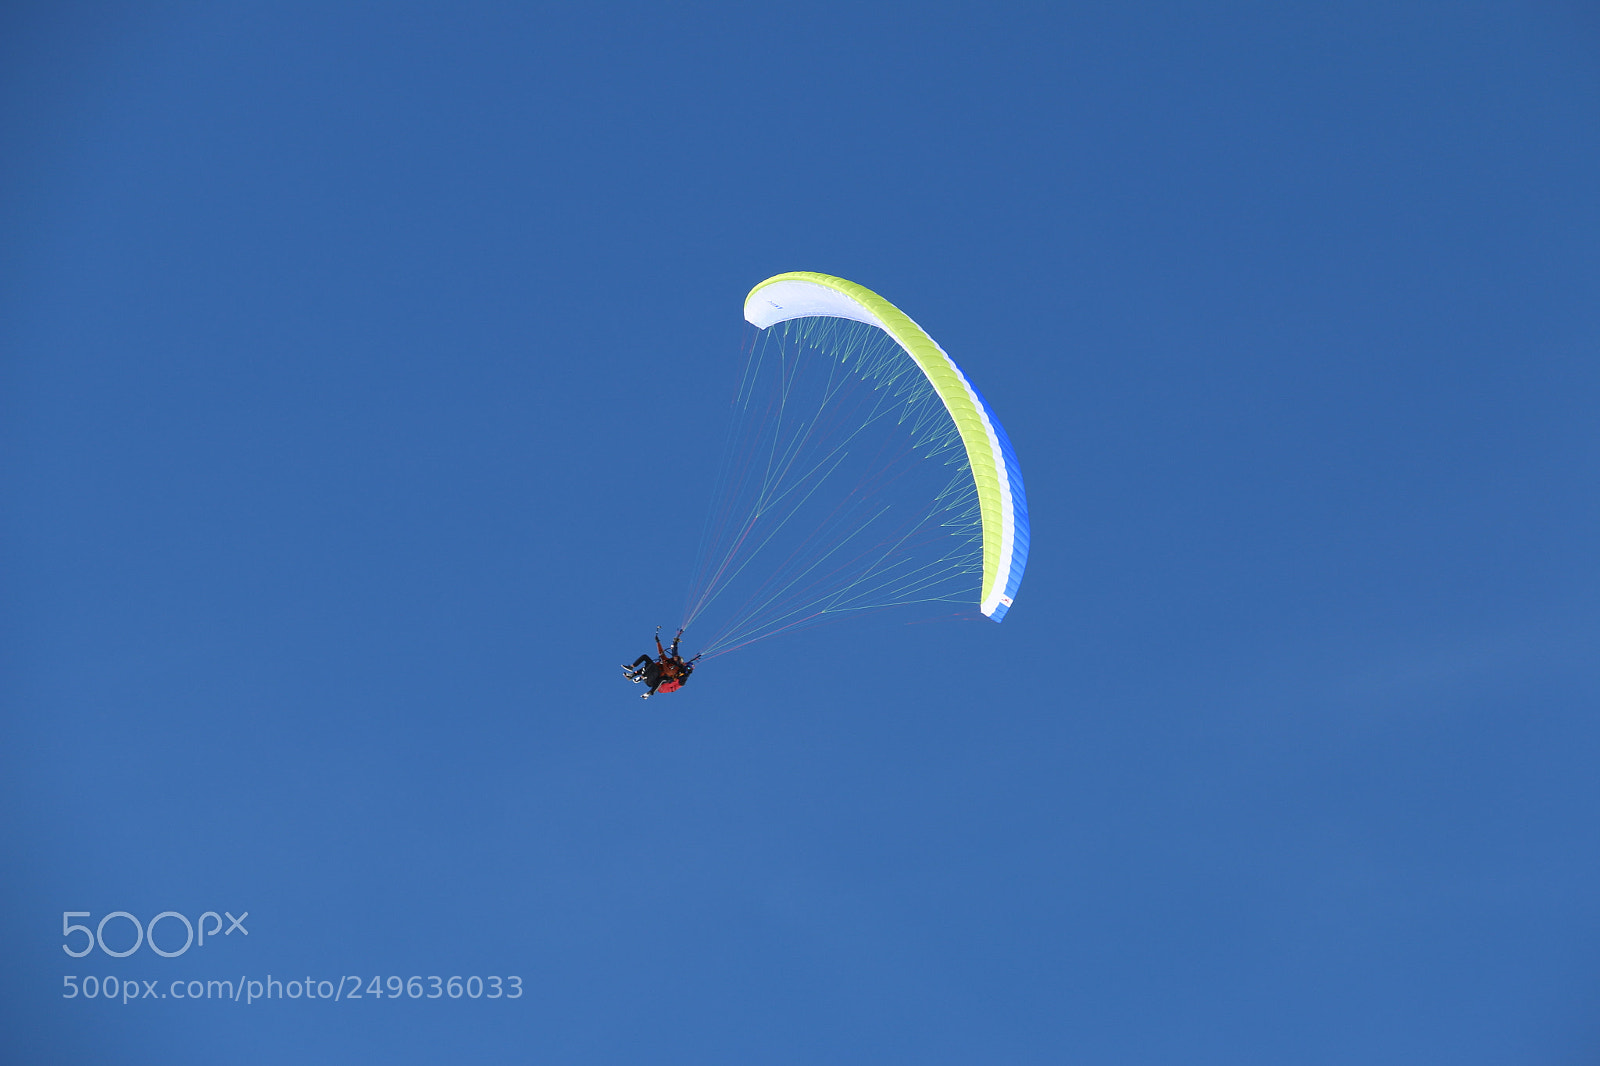 Canon EOS 70D sample photo. Paragliding photography